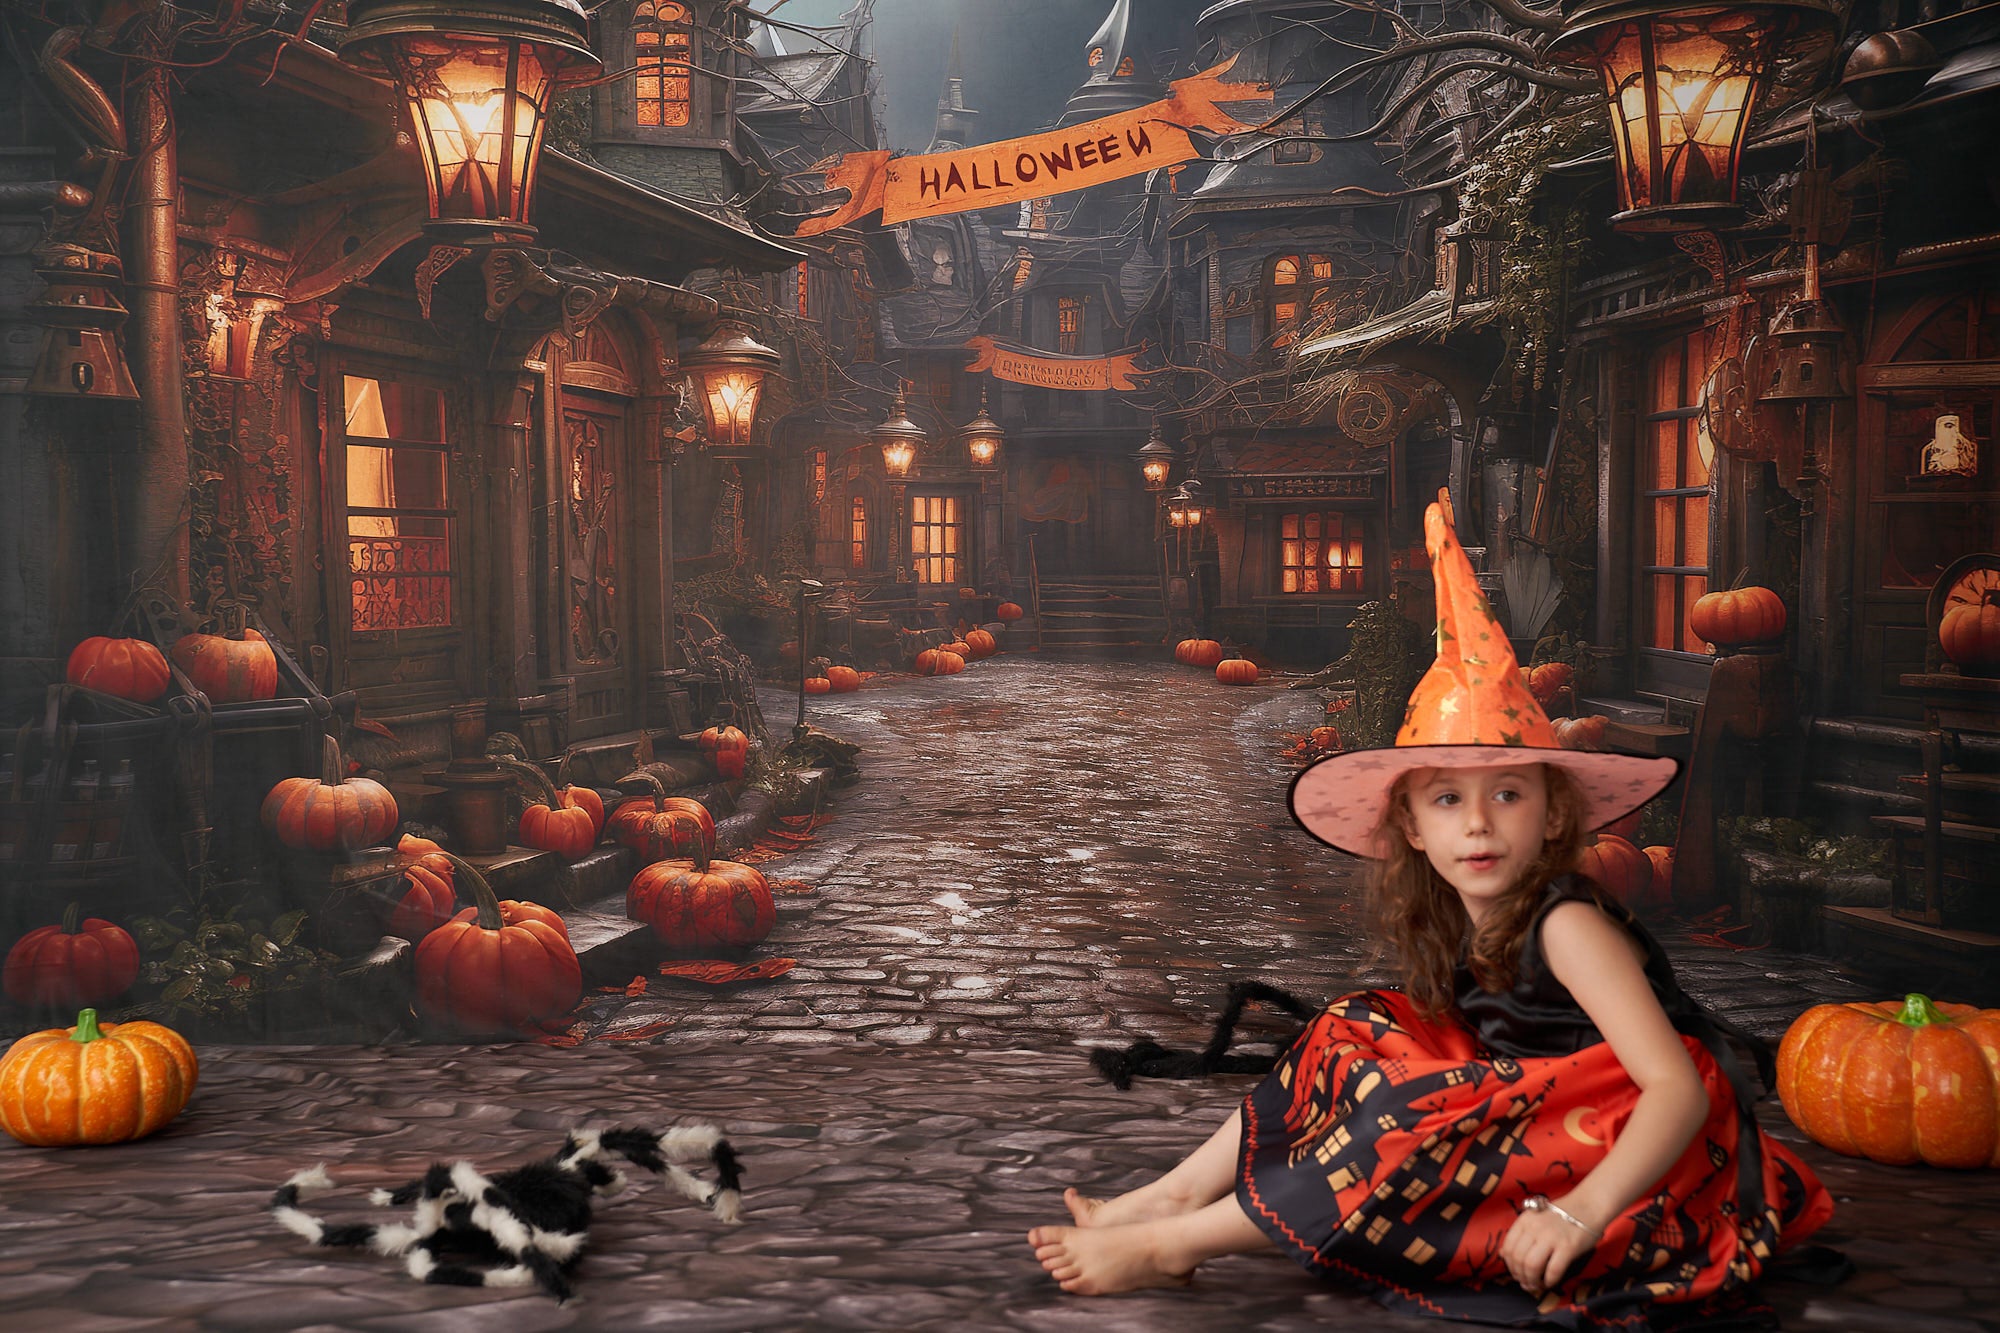 Kate Halloween Straße Kürbis Hintergrund von Emetselch